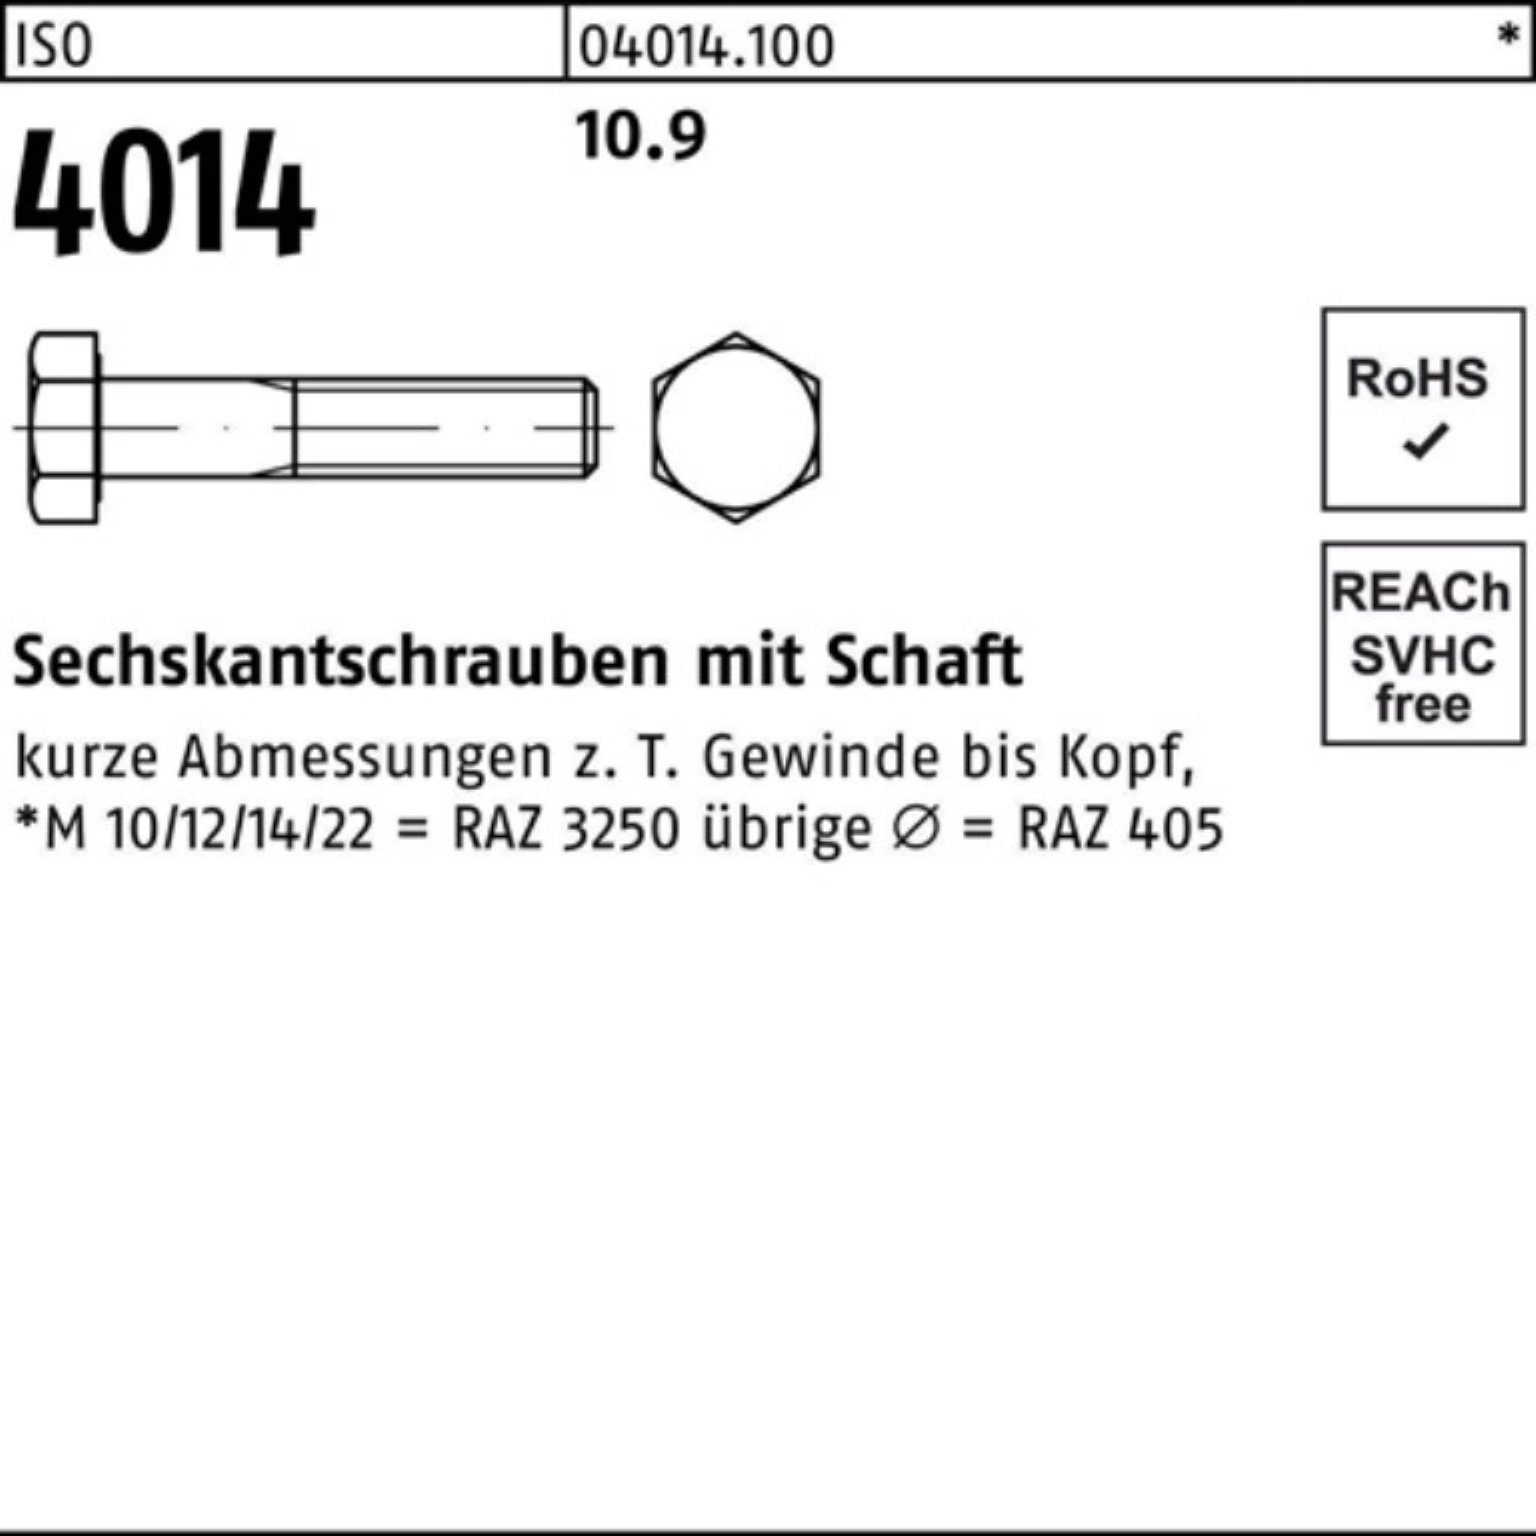 55 10.9 100er Pack Sechskantschraube IS ISO Sechskantschraube Stück Bufab 50 Schaft M16x 4014